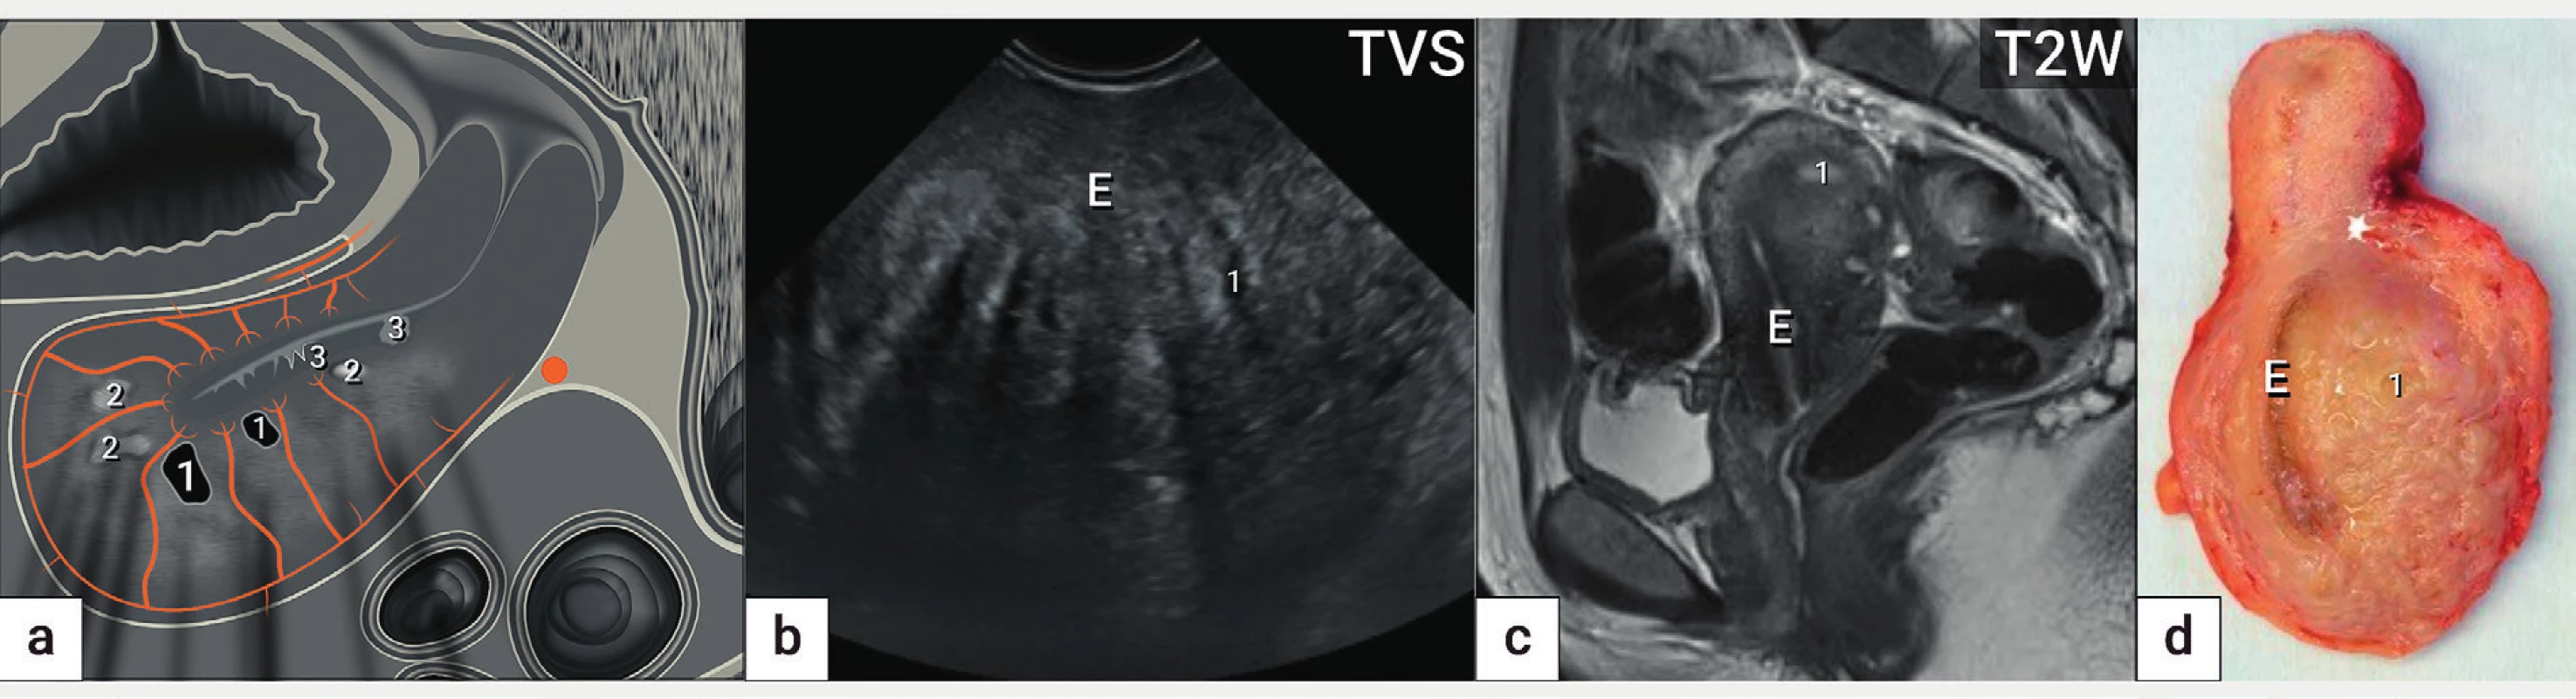 Adenomyóza<br>
Ultrazvukové schéma adenomyózy zadní stěny děložní (a) zobrazující asymetricky zesílenou zadní stěnu děložní na podkladě špatně
ohraničené léze s nehomogenní strukturou s cystickými projasněními (1), hyperechogenními ostrůvky (2), projekcemi endometria do myometria
(3) a jemnými akustickými stíny. Ultrazvukový nález (b), nález z magnetické rezonance (c) a intraoperační nález (d).
E – endometrium, TVS – transvaginální sonografie, T2W – T2 vážené obrazy v magnetické rezonanci